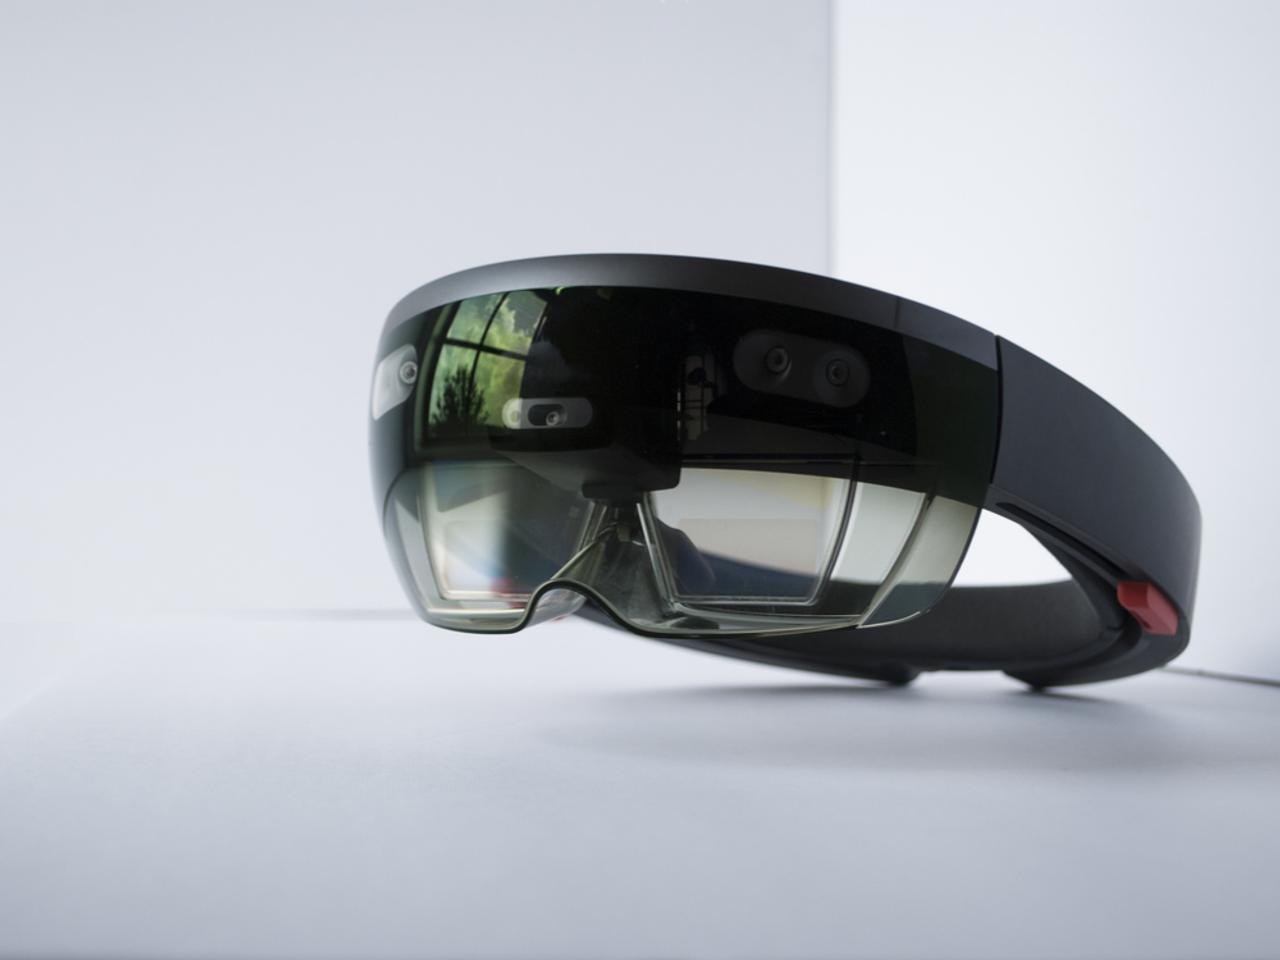 Microsoftの新MRヘッドセット｢HoloLens 2｣が来月に発表されるかも!?